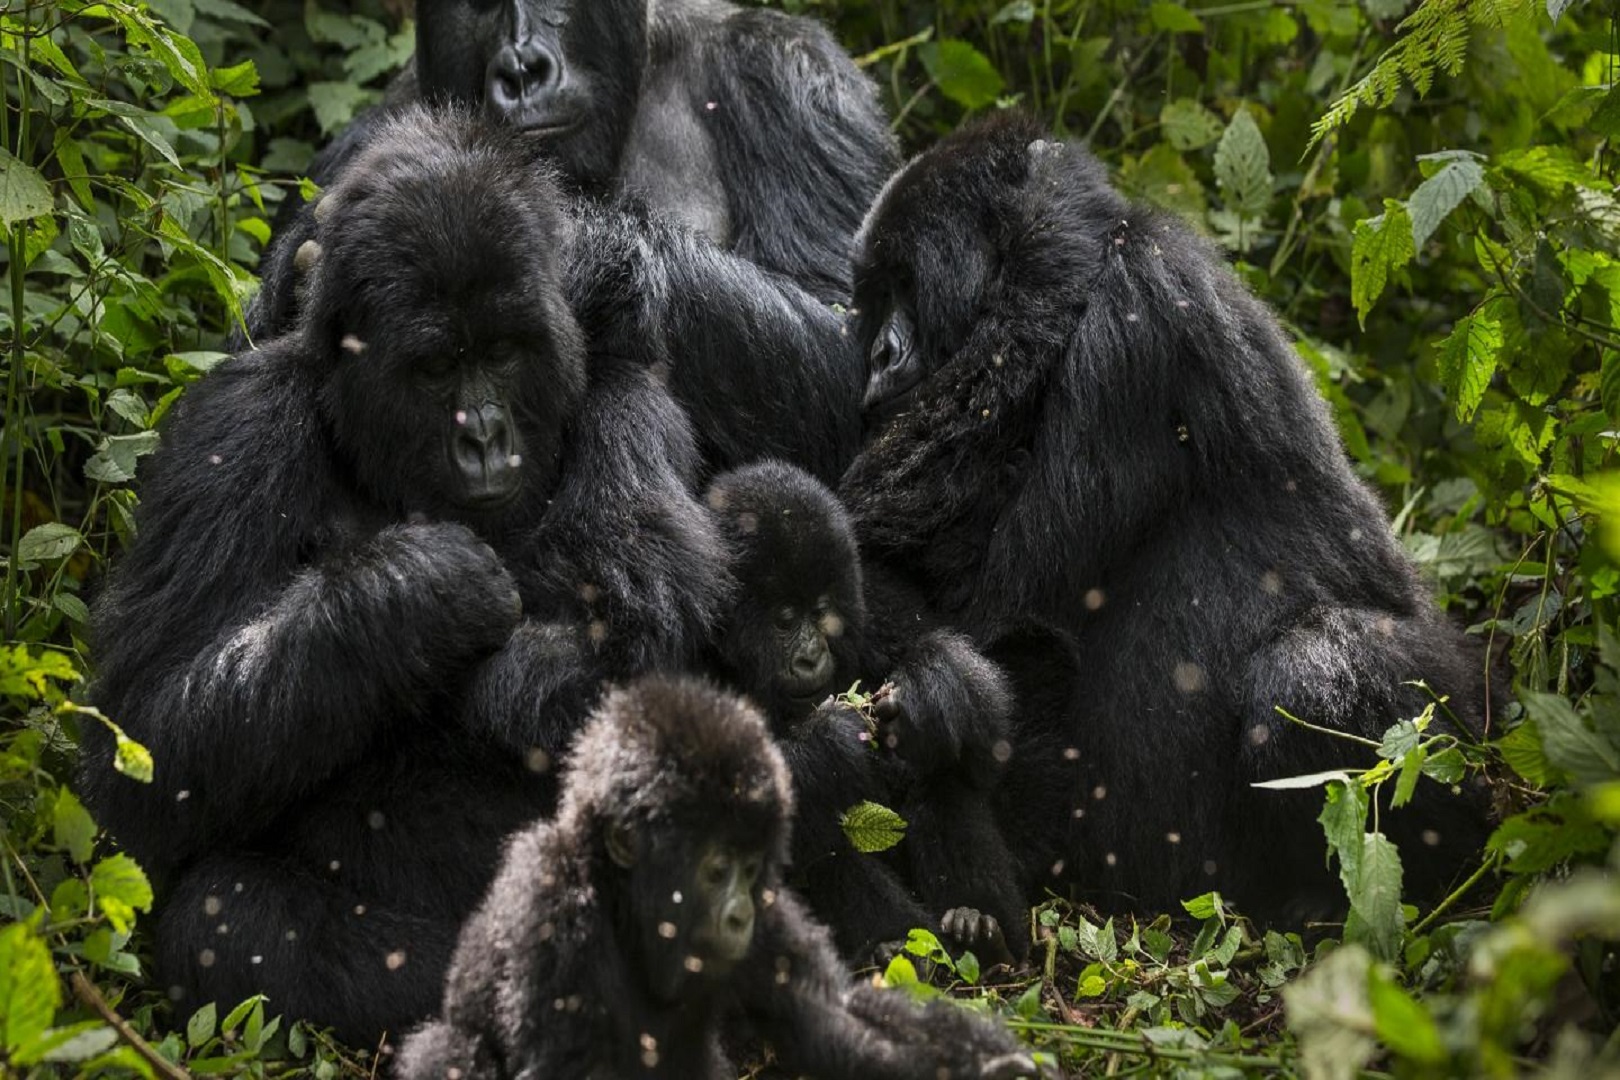 A family of Mountain gorillas